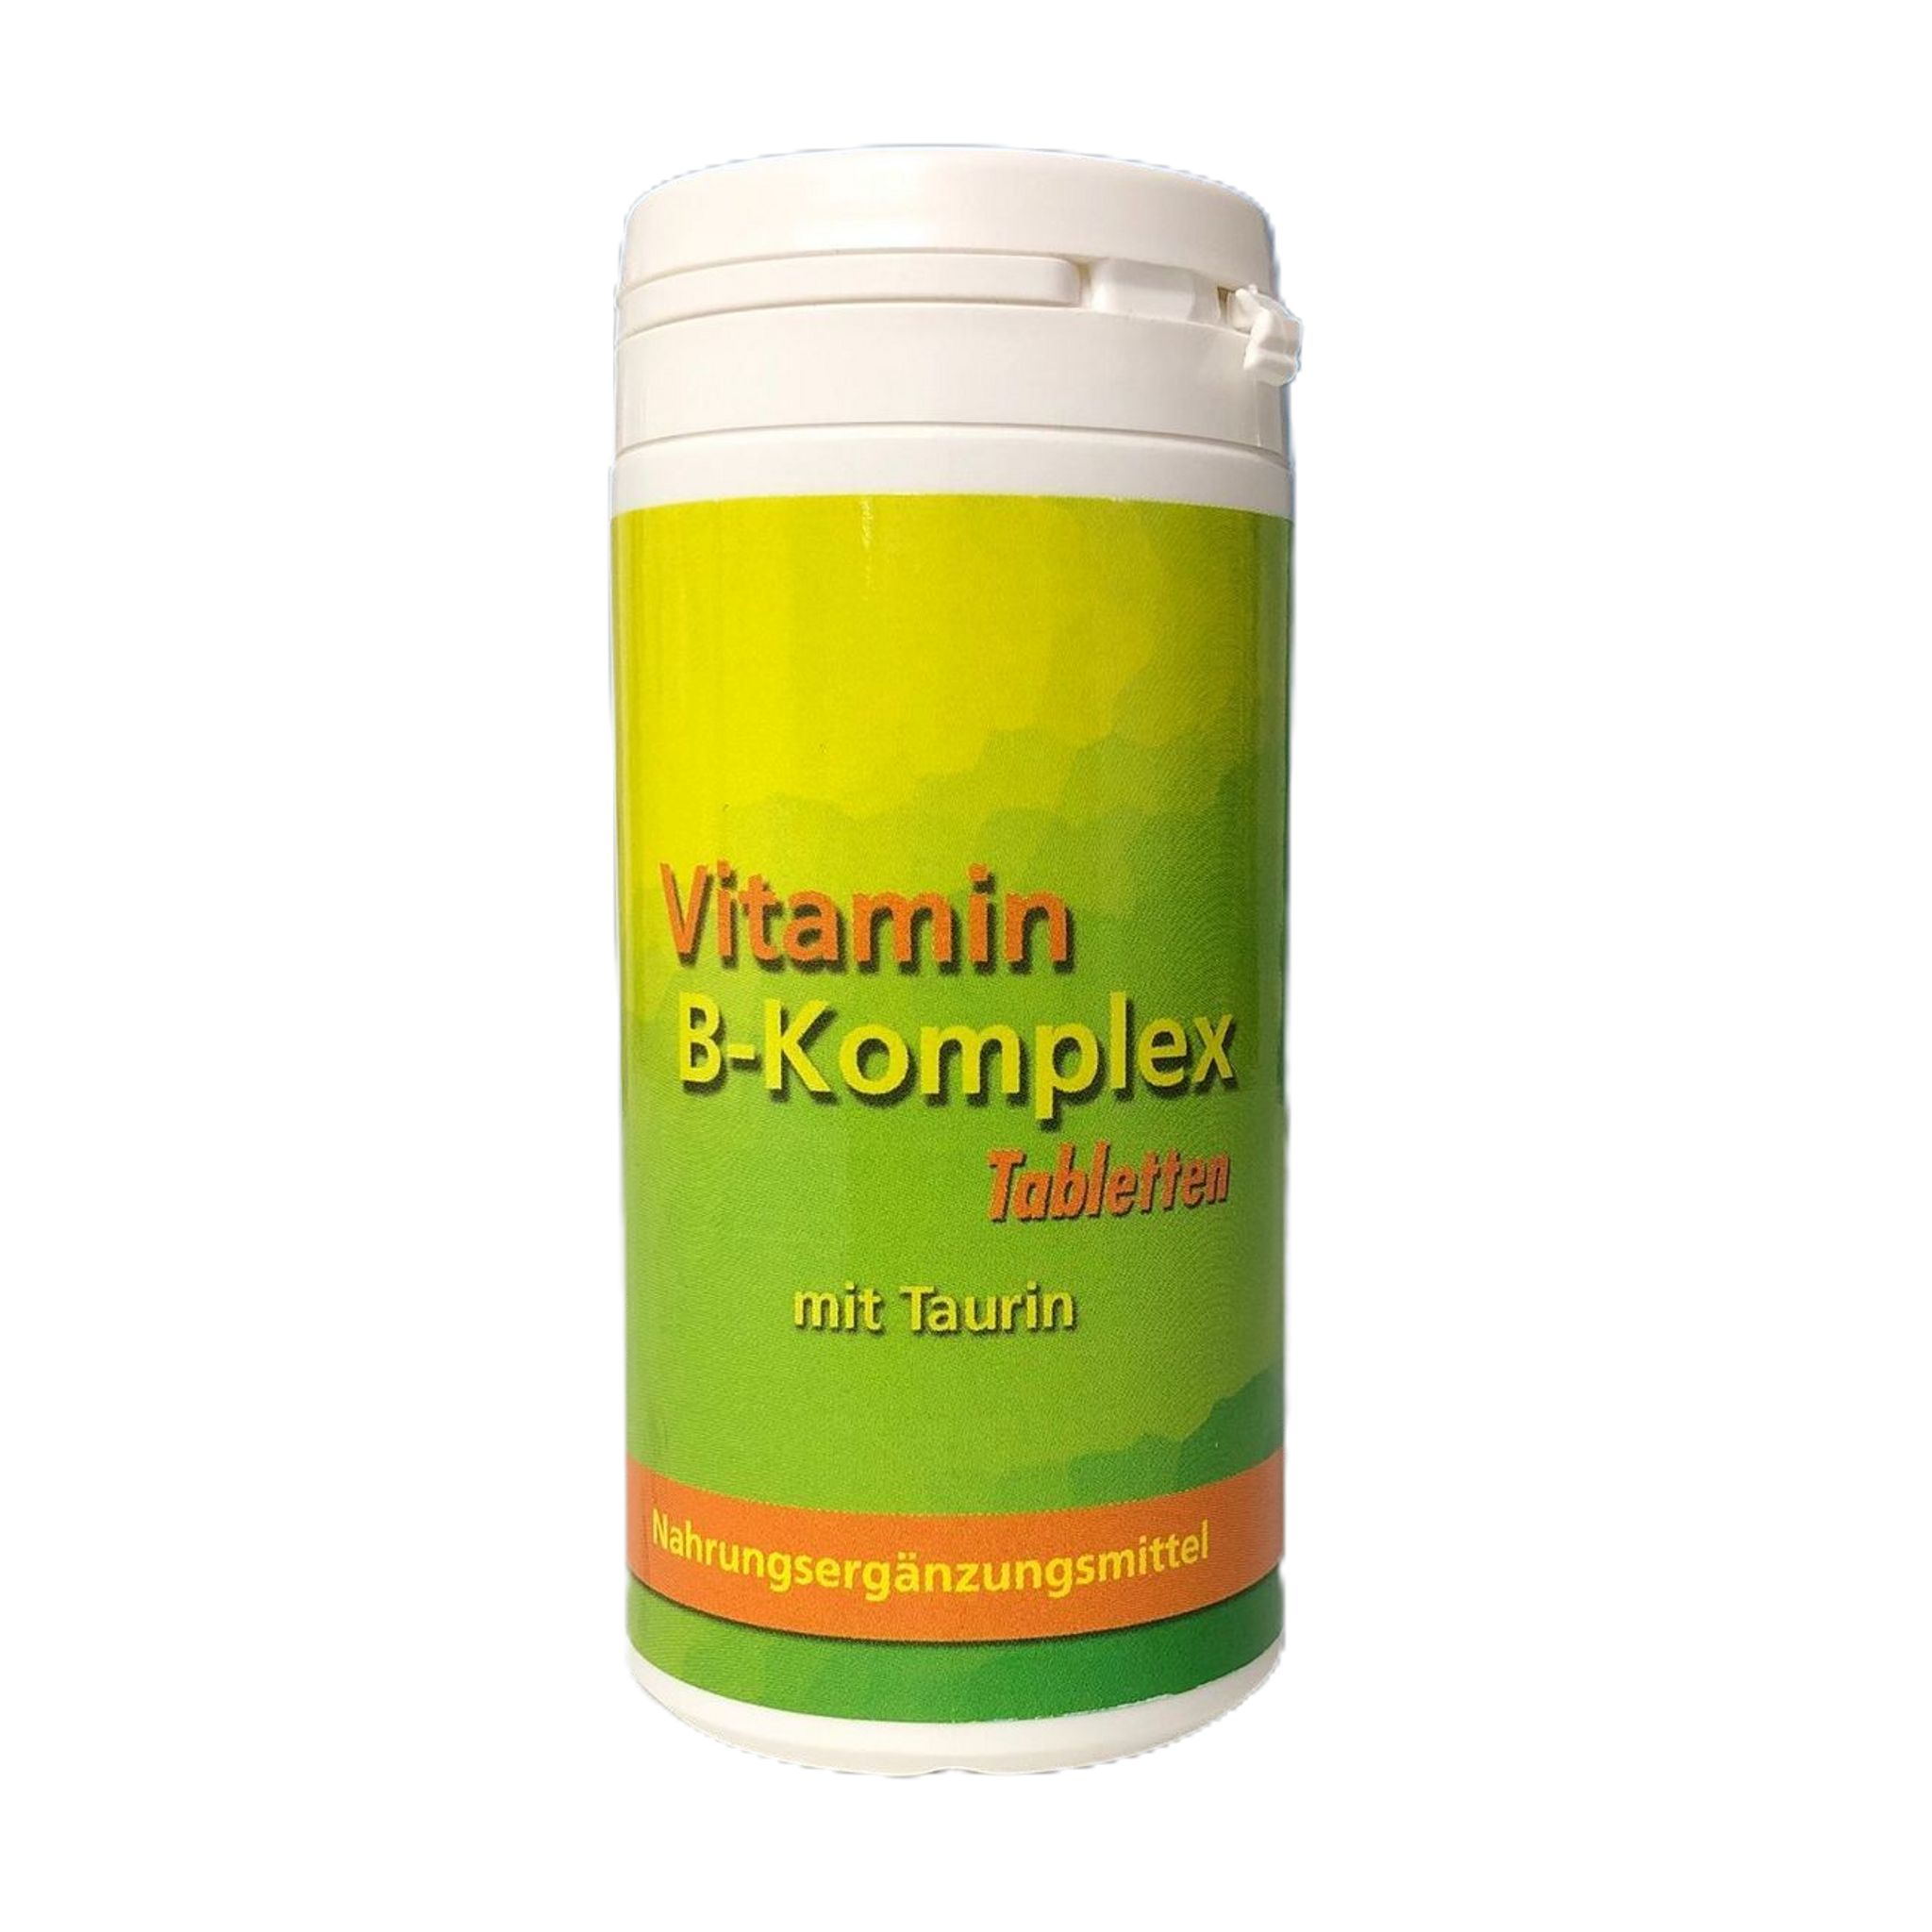 OMEGA - Vitamin-B-Komplex mit Taurin 60 Tabl. | 84 g